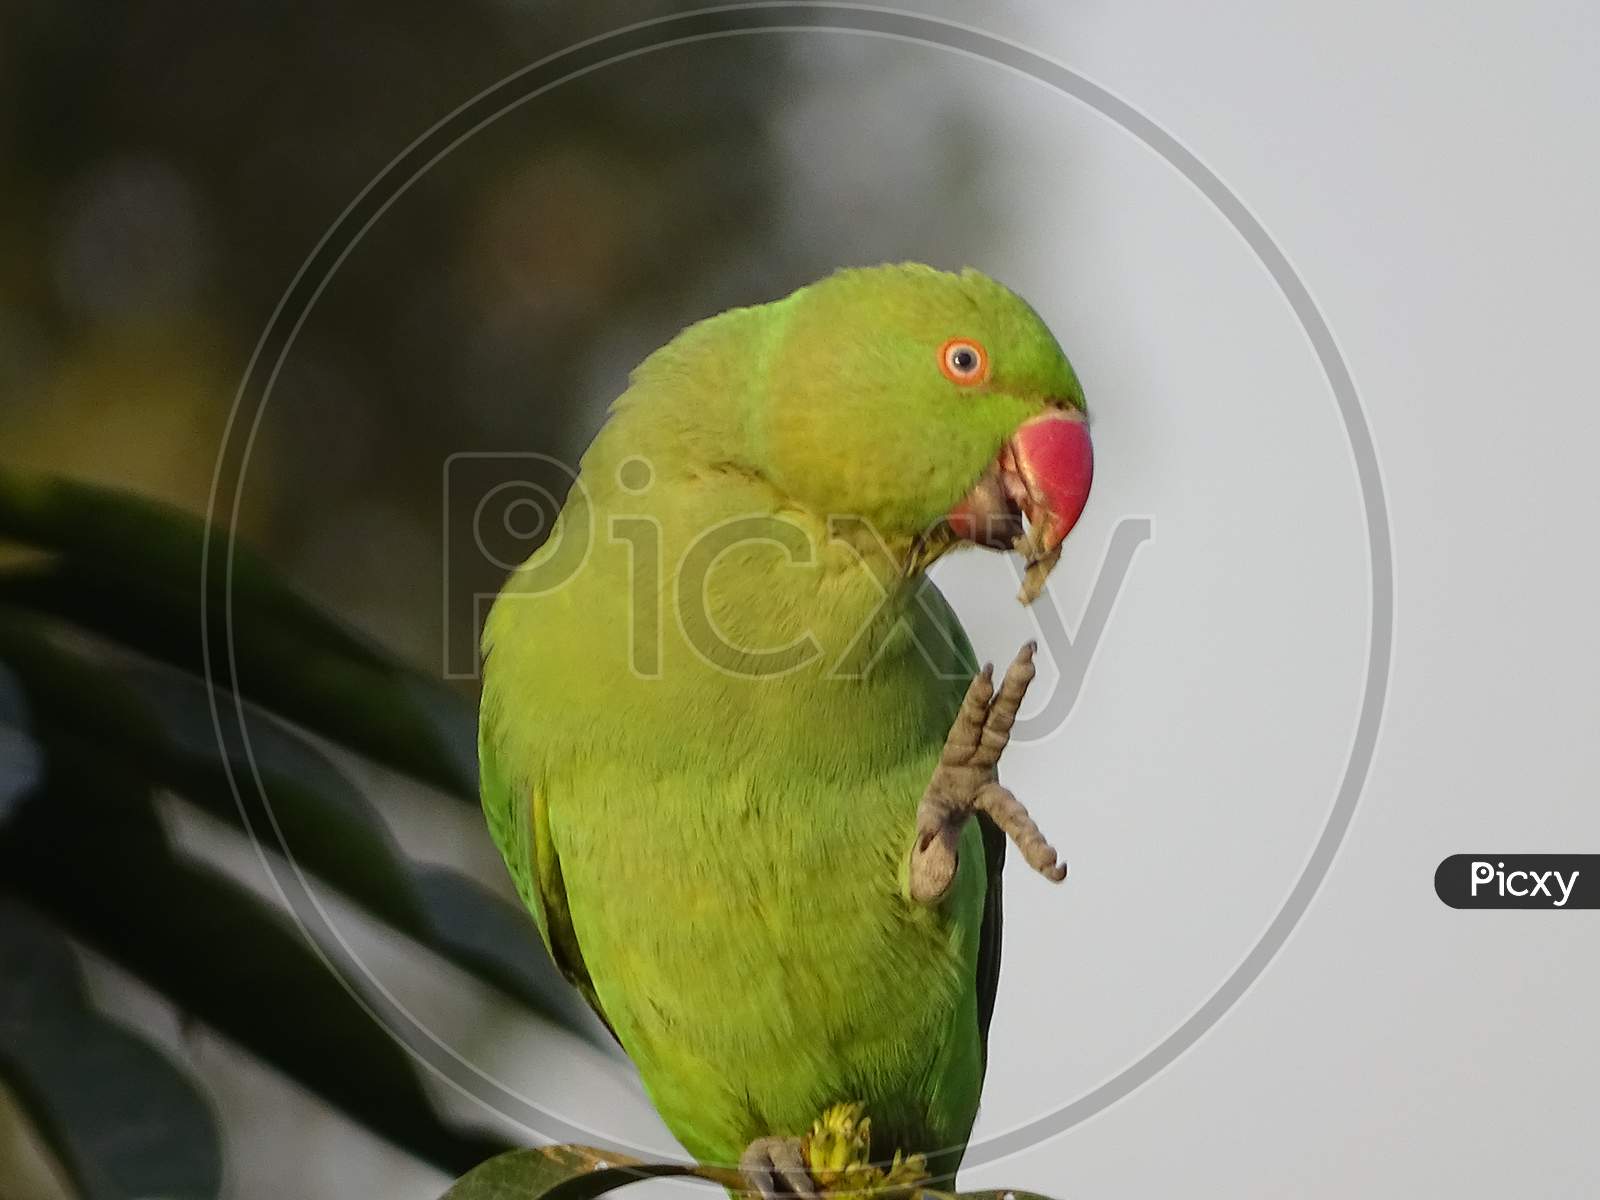 Rose-ringed Parakeet giving highfive